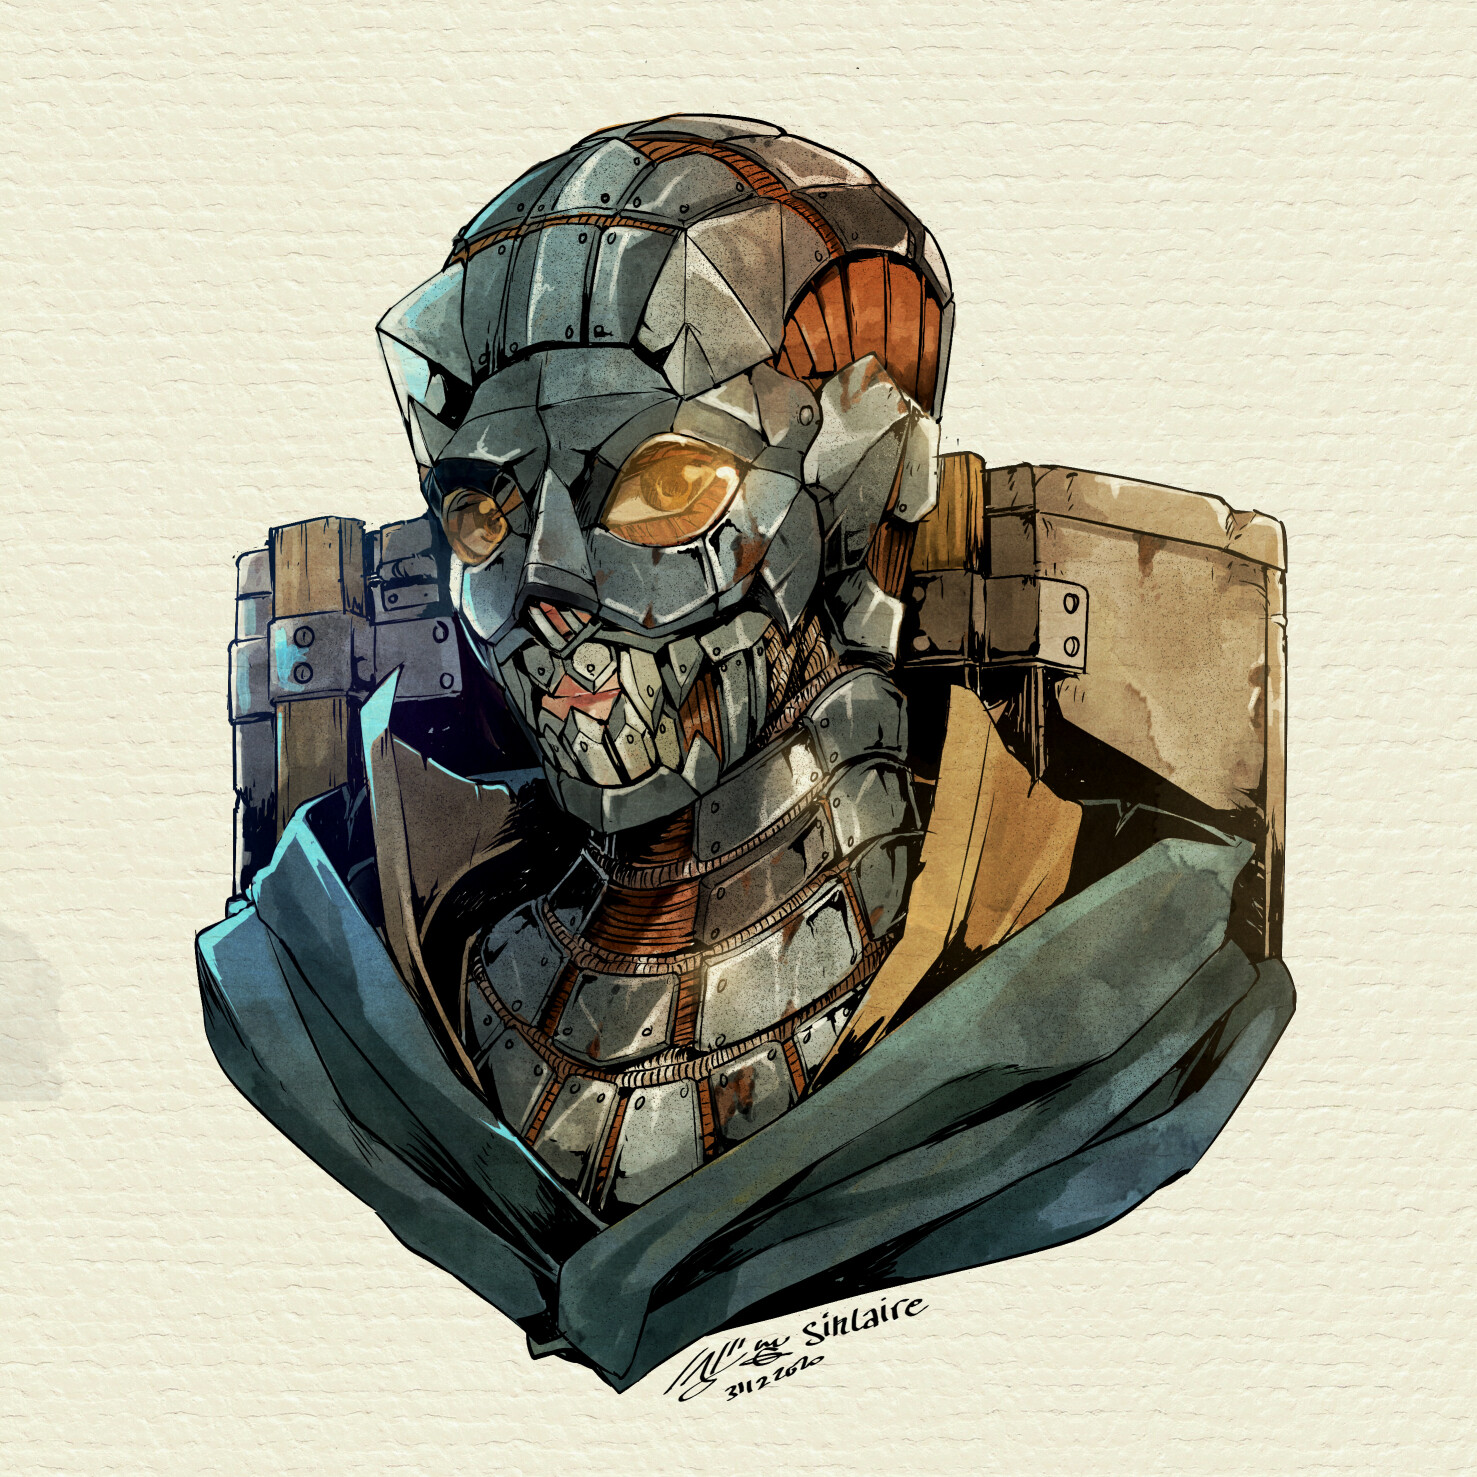 Arcane armor - Full face helmet ON